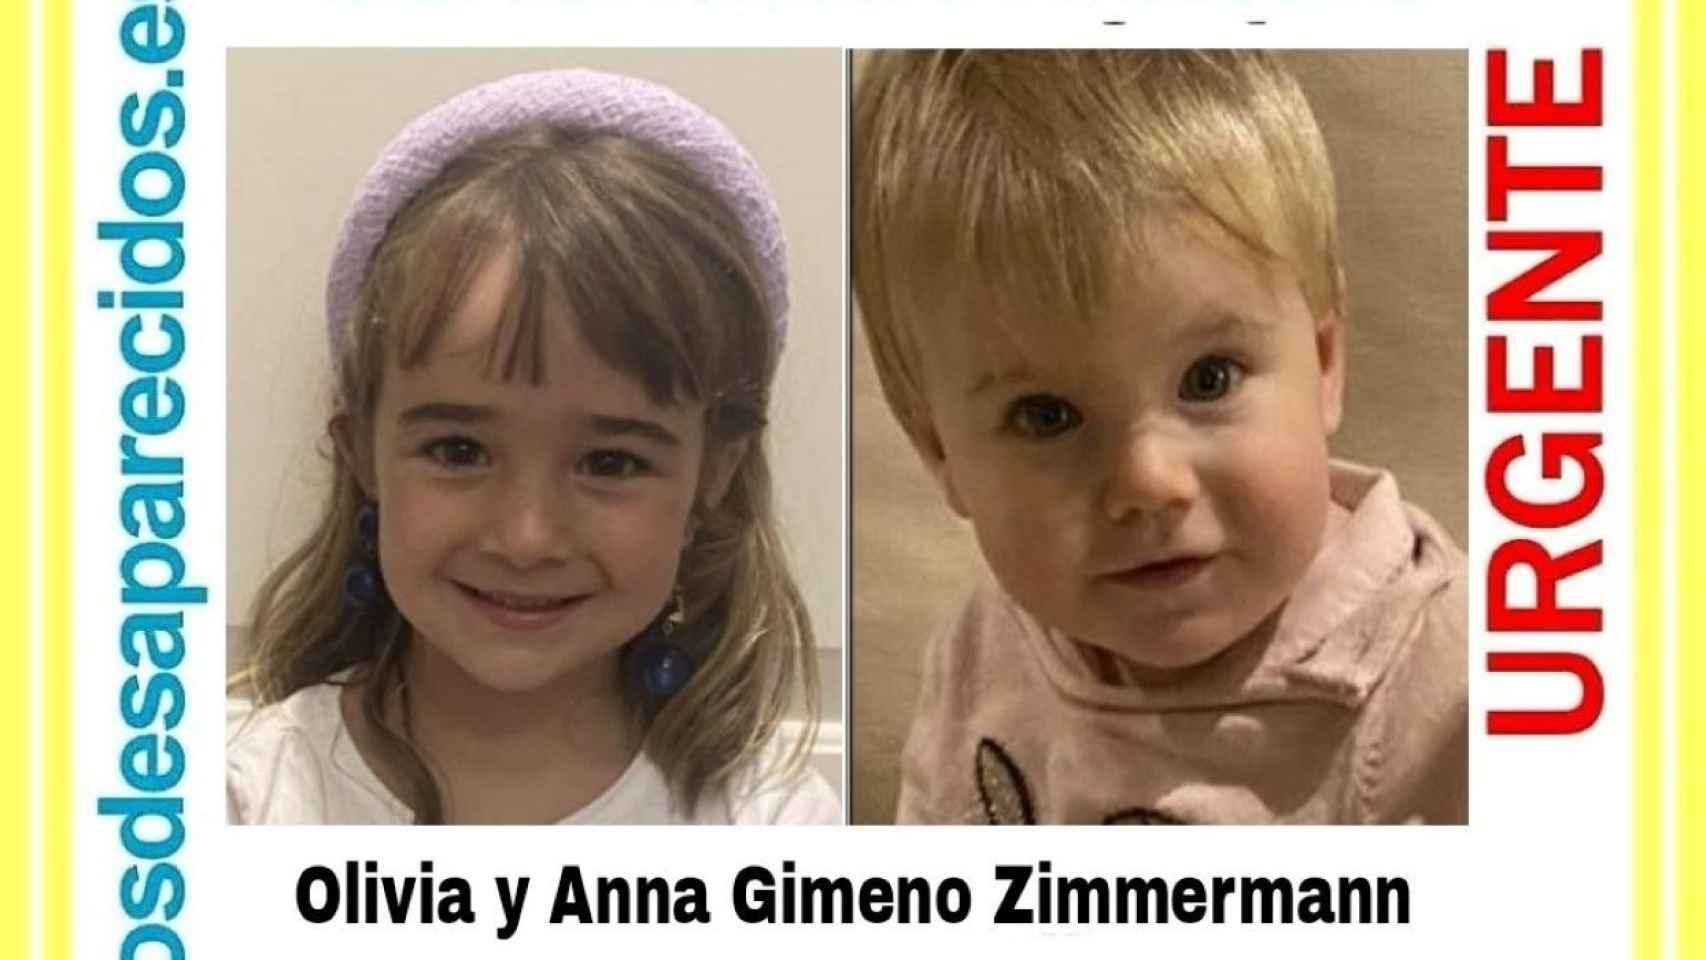 Las niñas desaparecidas en Tenerife, Olivia y Anna Gimeno Zimmermann / EP